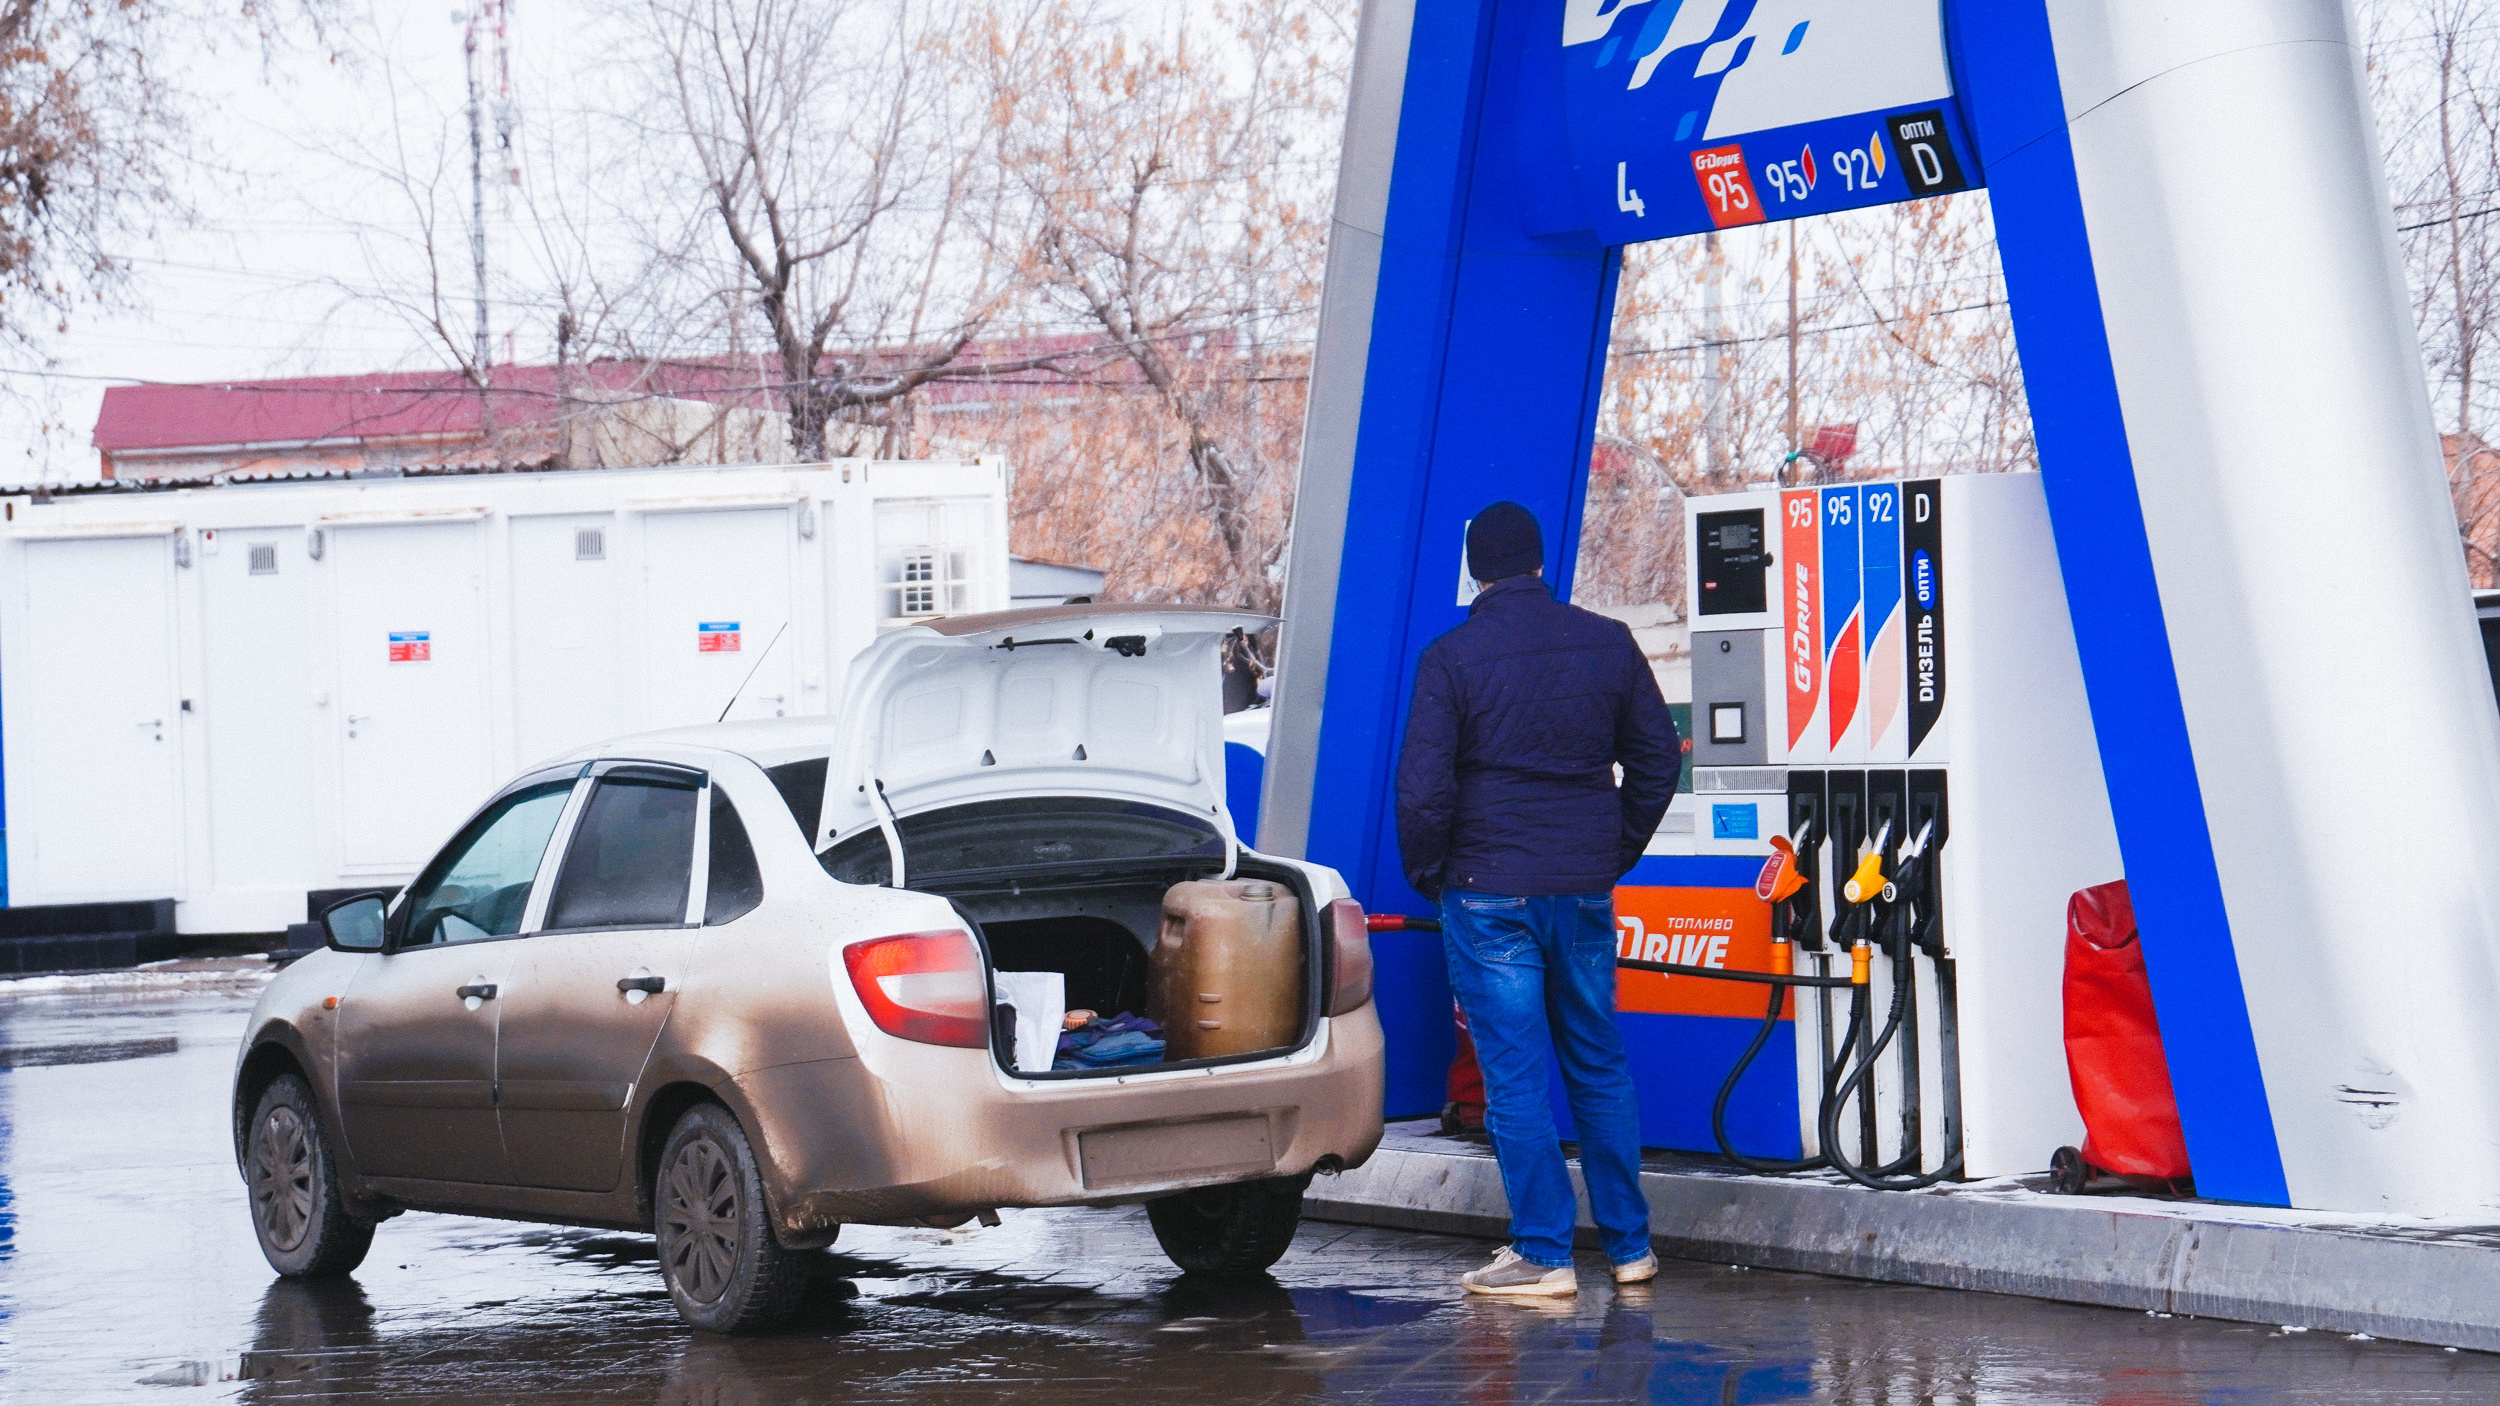 Где бензин дороже — в Омске, Москве или Тюмени. Сравниваем цены на омских заправках с другими регионами